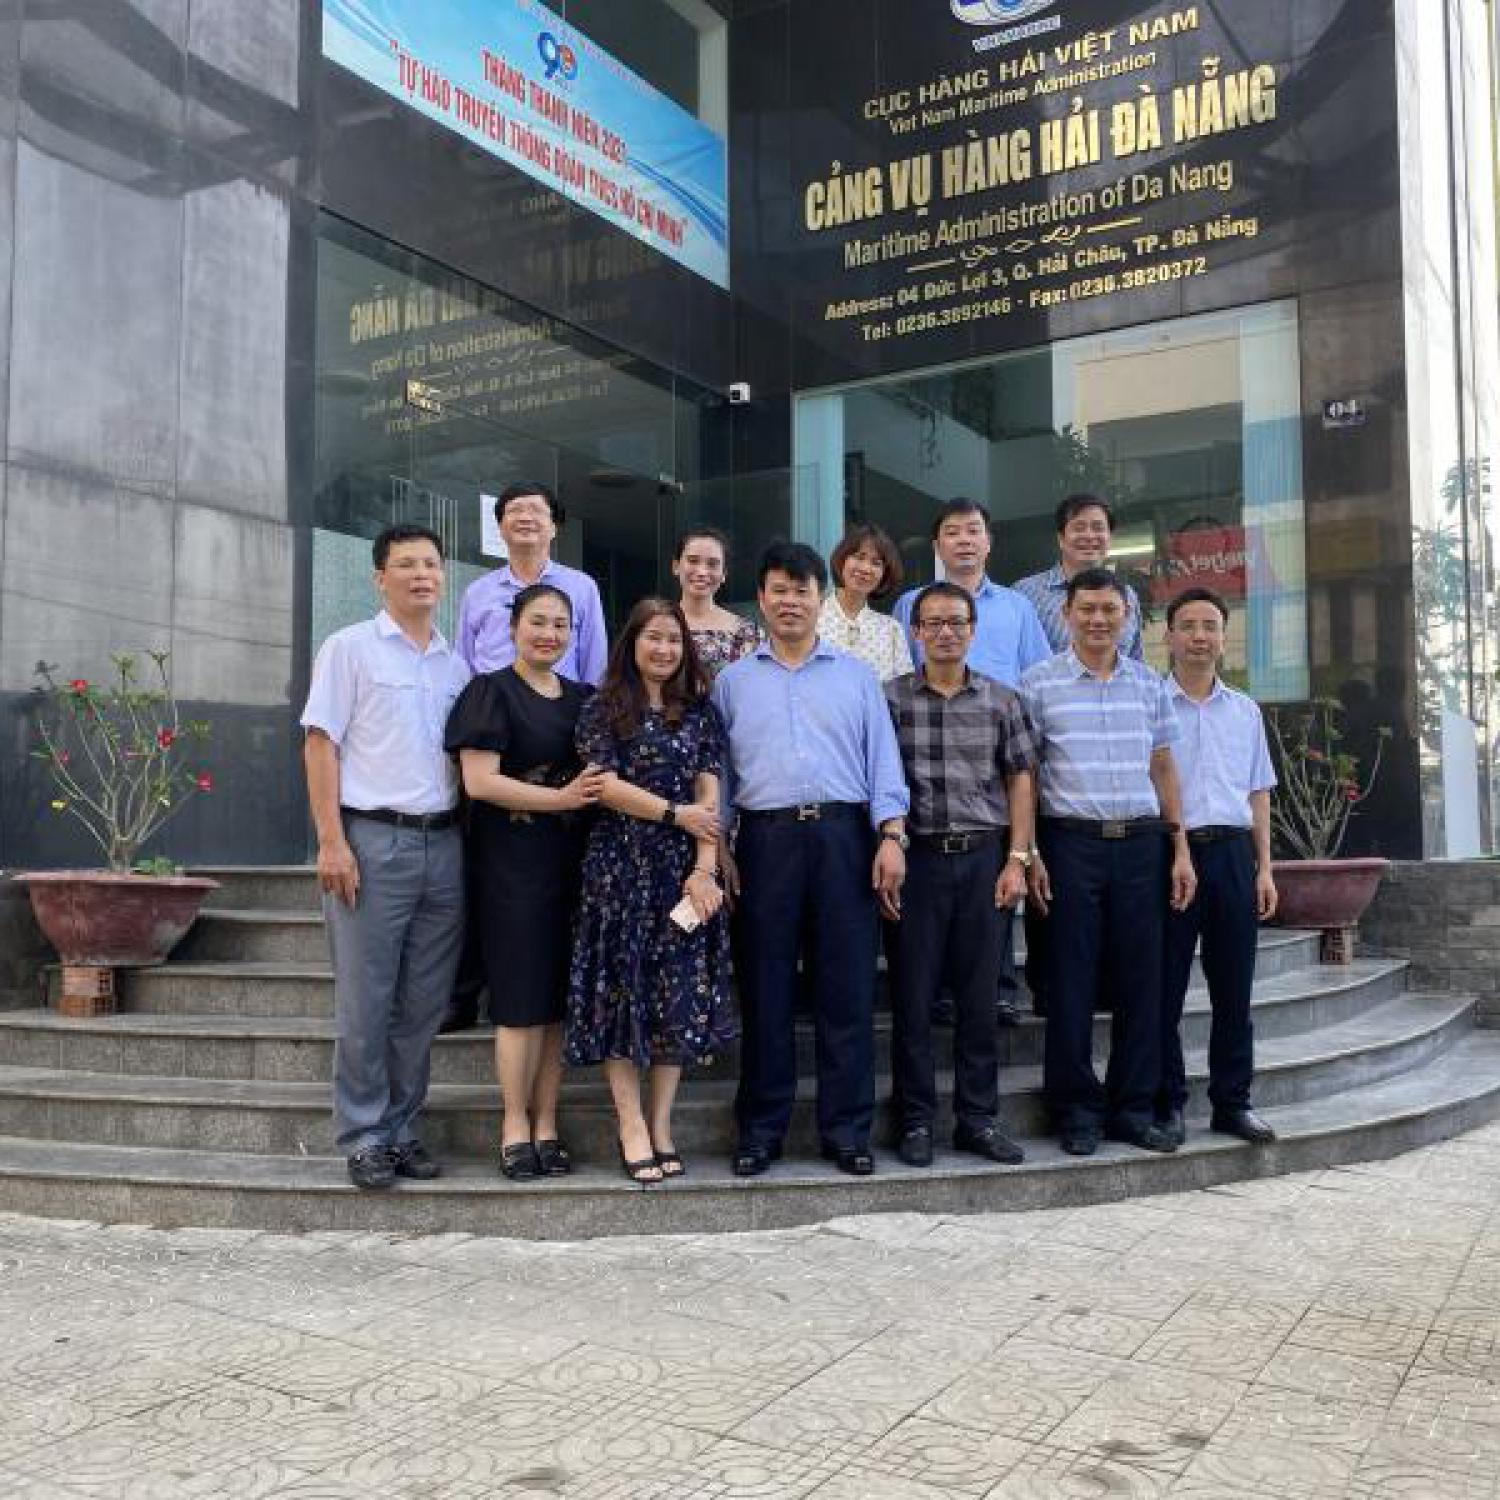 Đoàn công tác của Công đoàn GTVT Việt Nam đến thăm và làm việc tại Cảng vụ Hàng hải Đà Nẵng